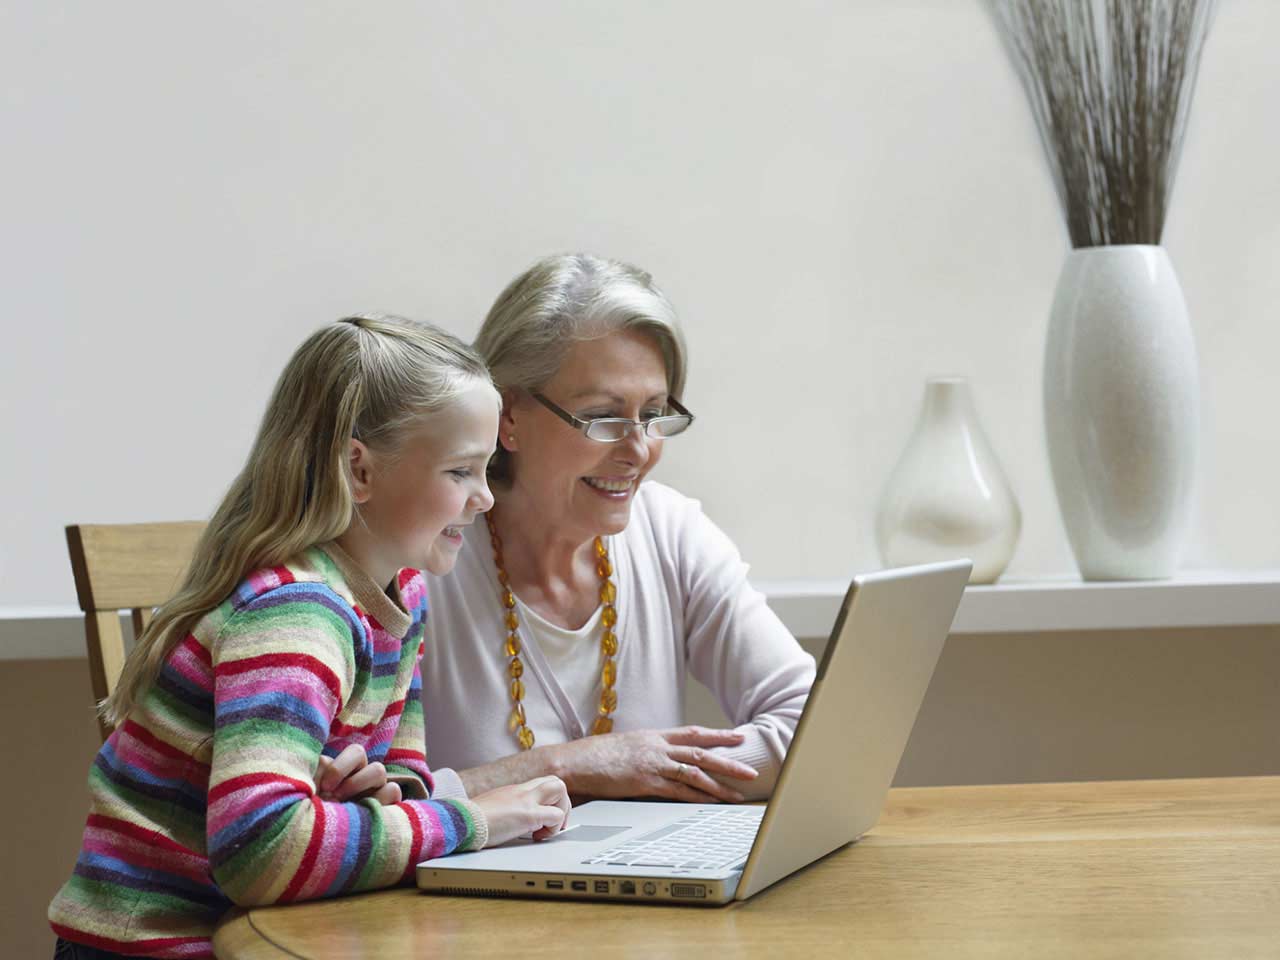 Grandma and granddaughter using laptop